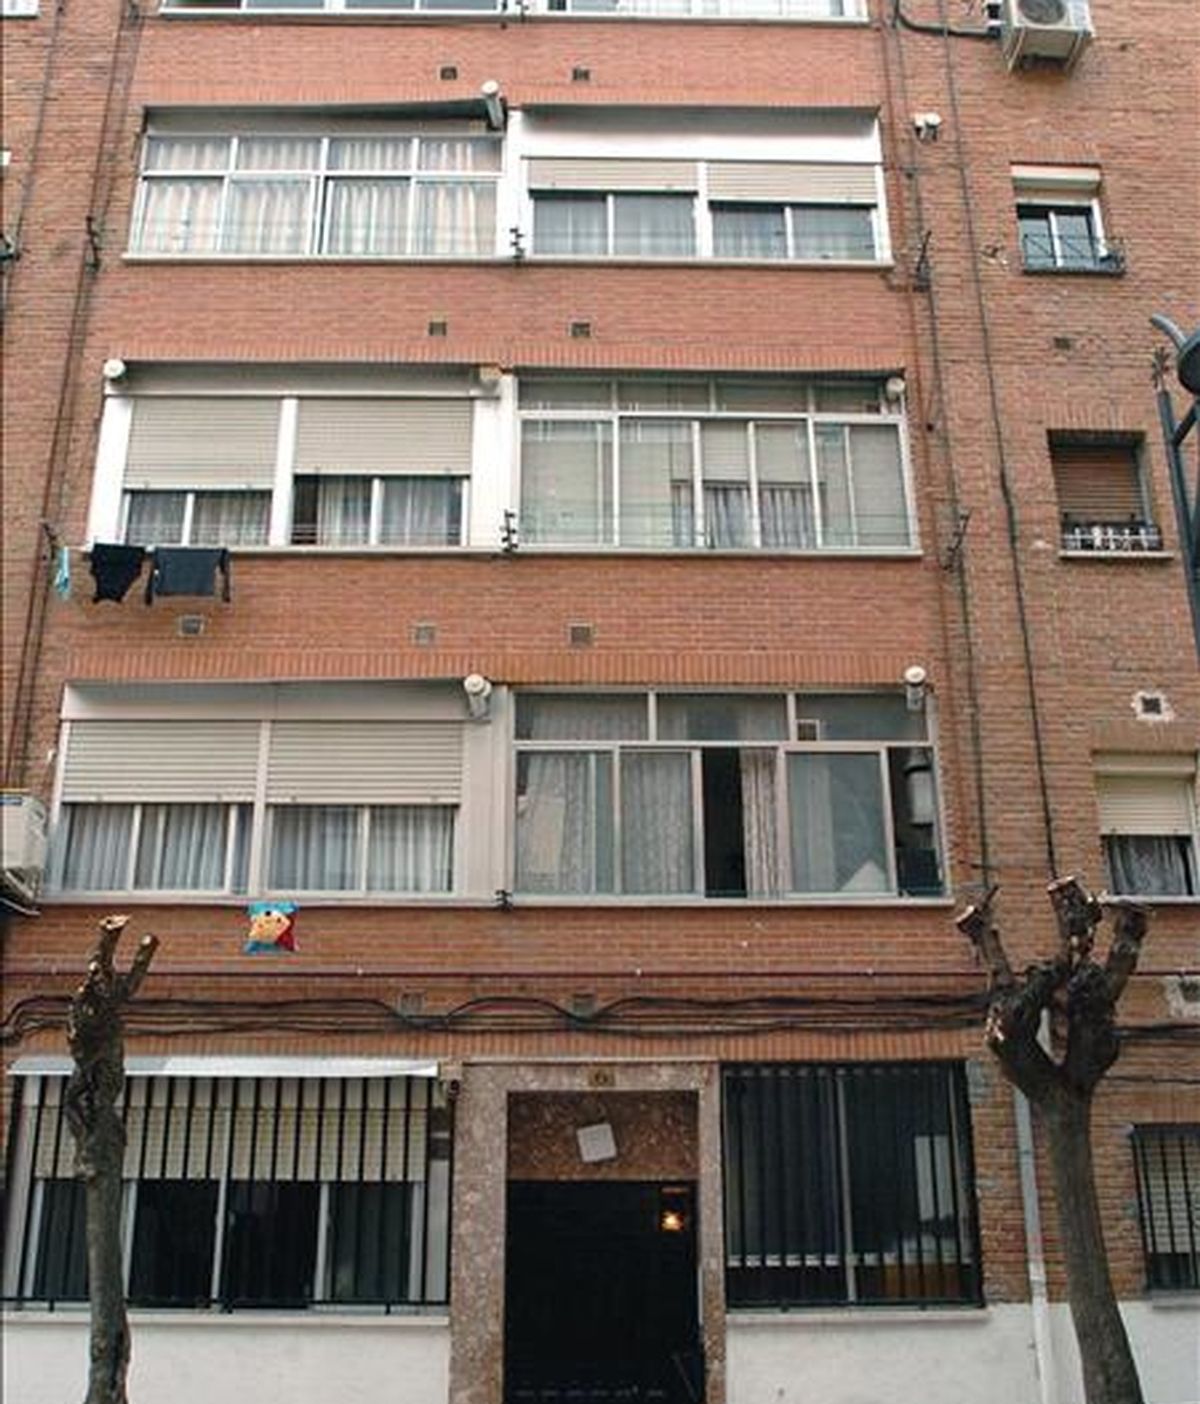 Fachada del edificio situado en el número 6 de la calle Camelias, en la localidad madrileña de Getafe, donde fue detenido Mohamed Haddad, de 30, por su supuesta relación con el terrorismo islamista y con los implicados en los atentados del 11 de marzo de 2004 en Madrid. EFE/Archivo